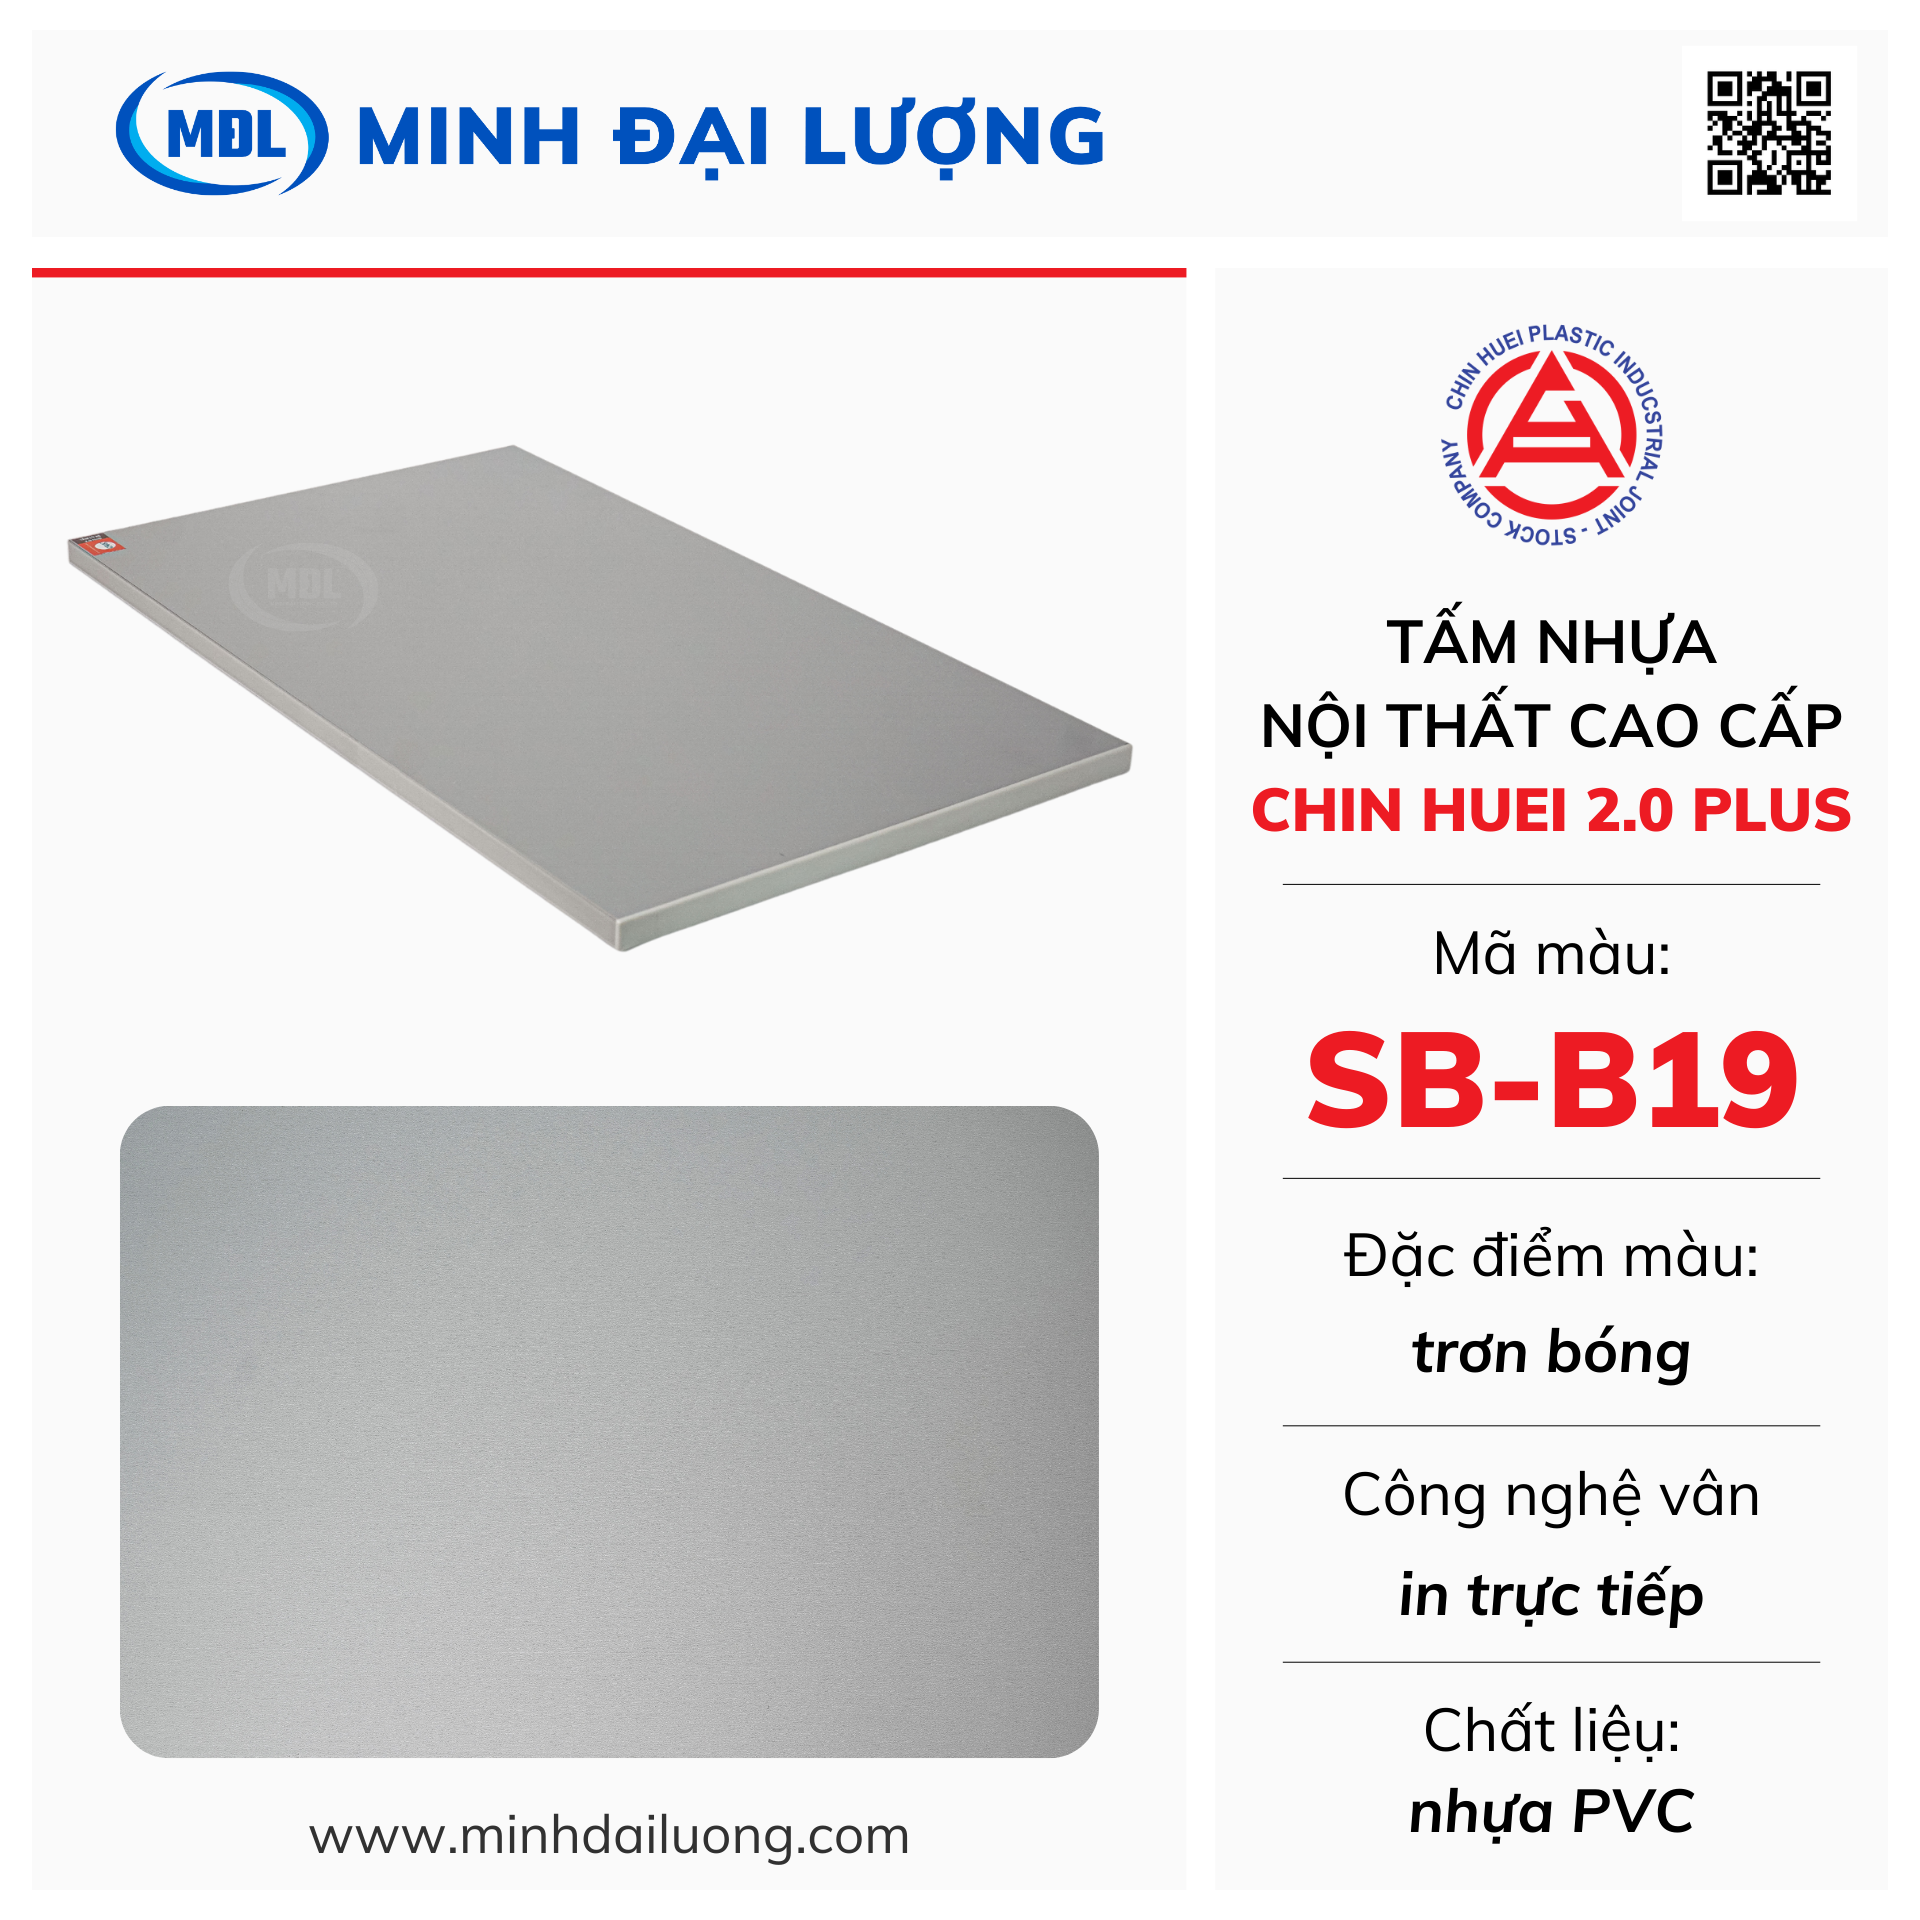 Tấm nhựa nội thất cao cấp Chin Huei 2.0 Plus màu SB-B19